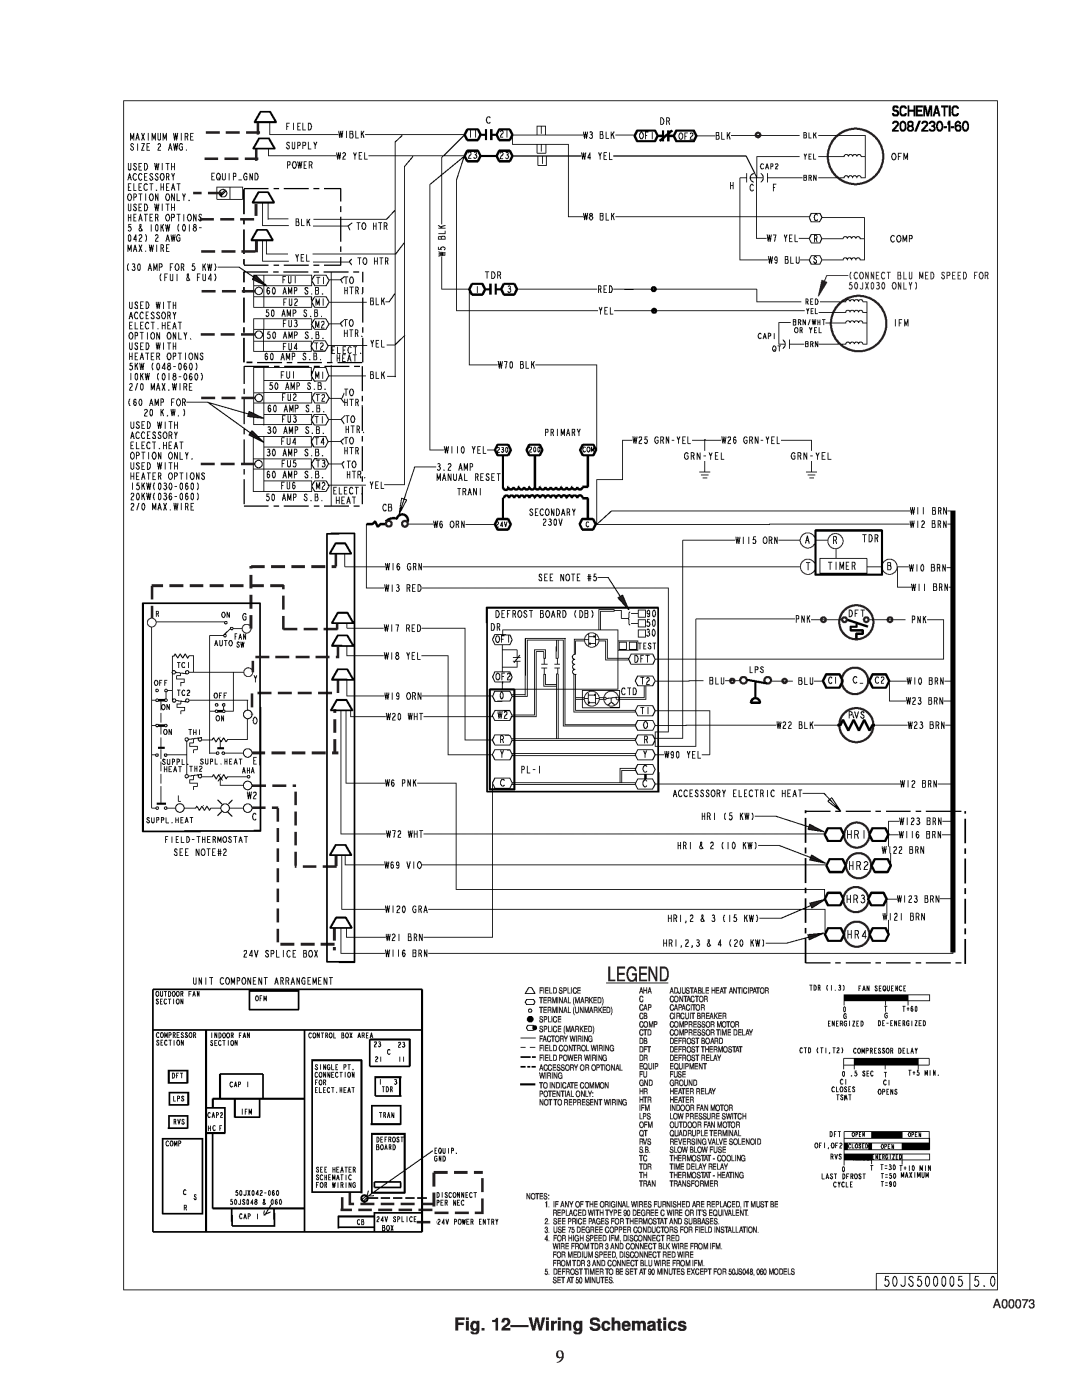 Carrier 50JS instruction manual ÐWiring Schematics 